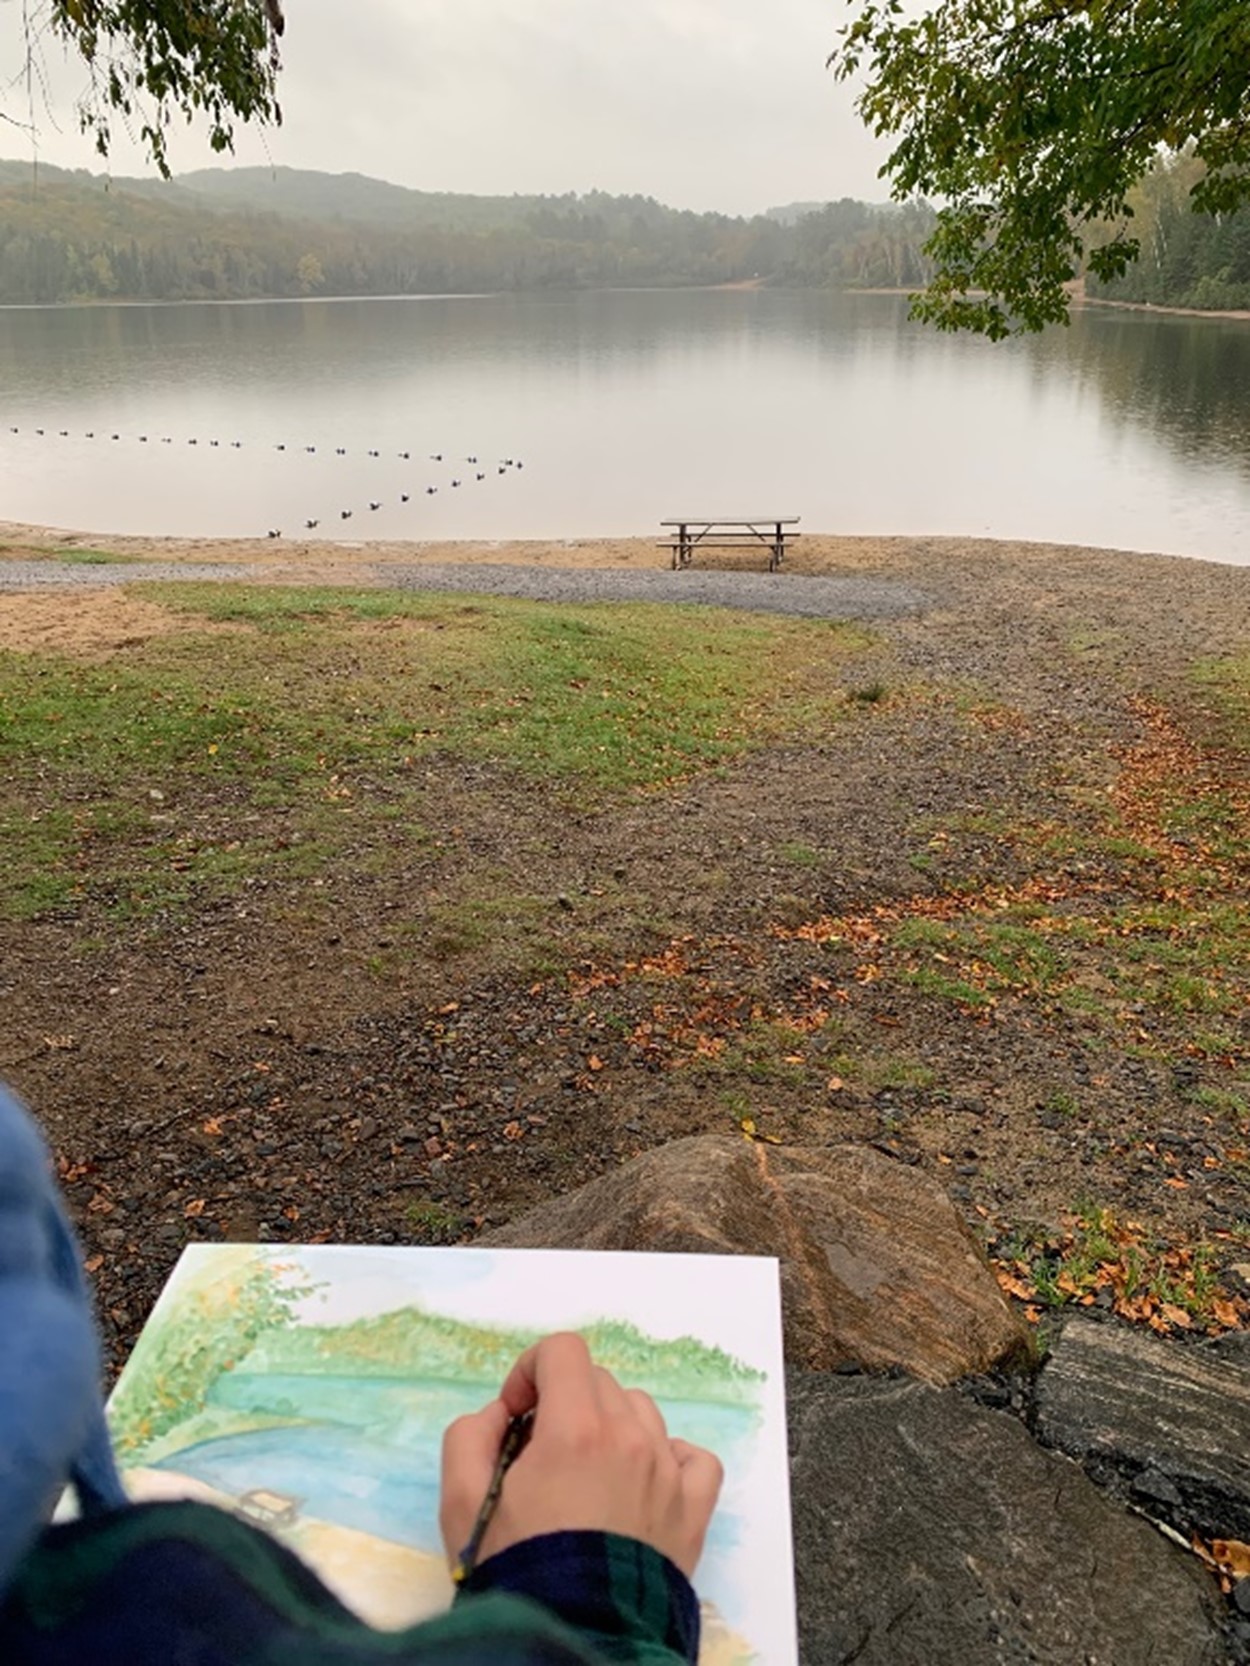 Une personne peignant la vue d’un lac